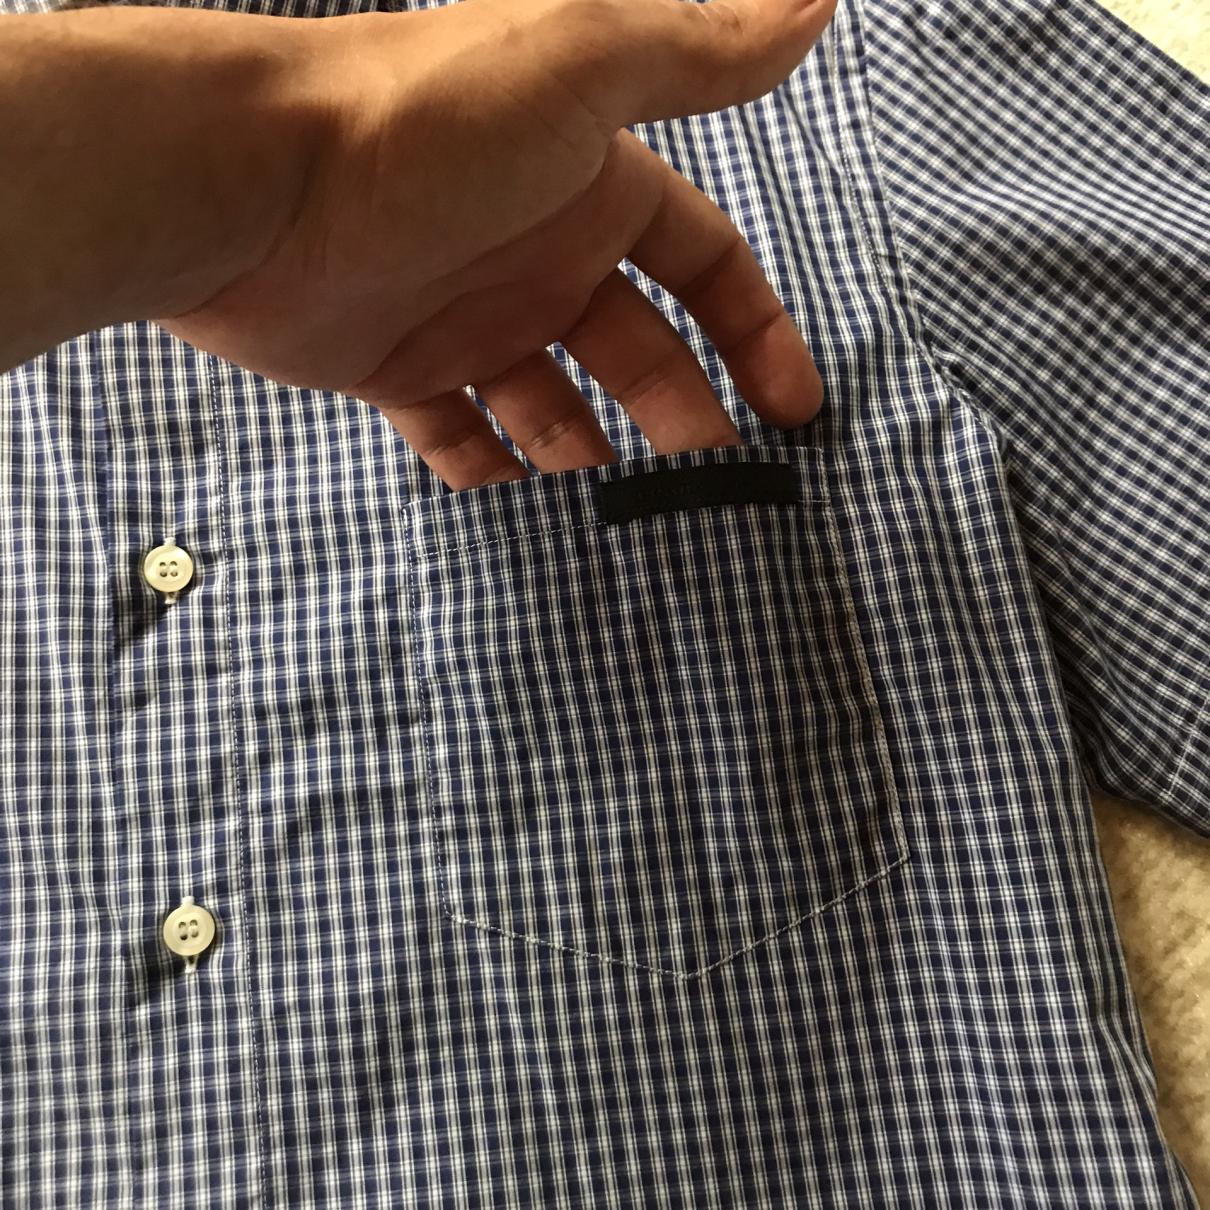 Polo shirt - 4